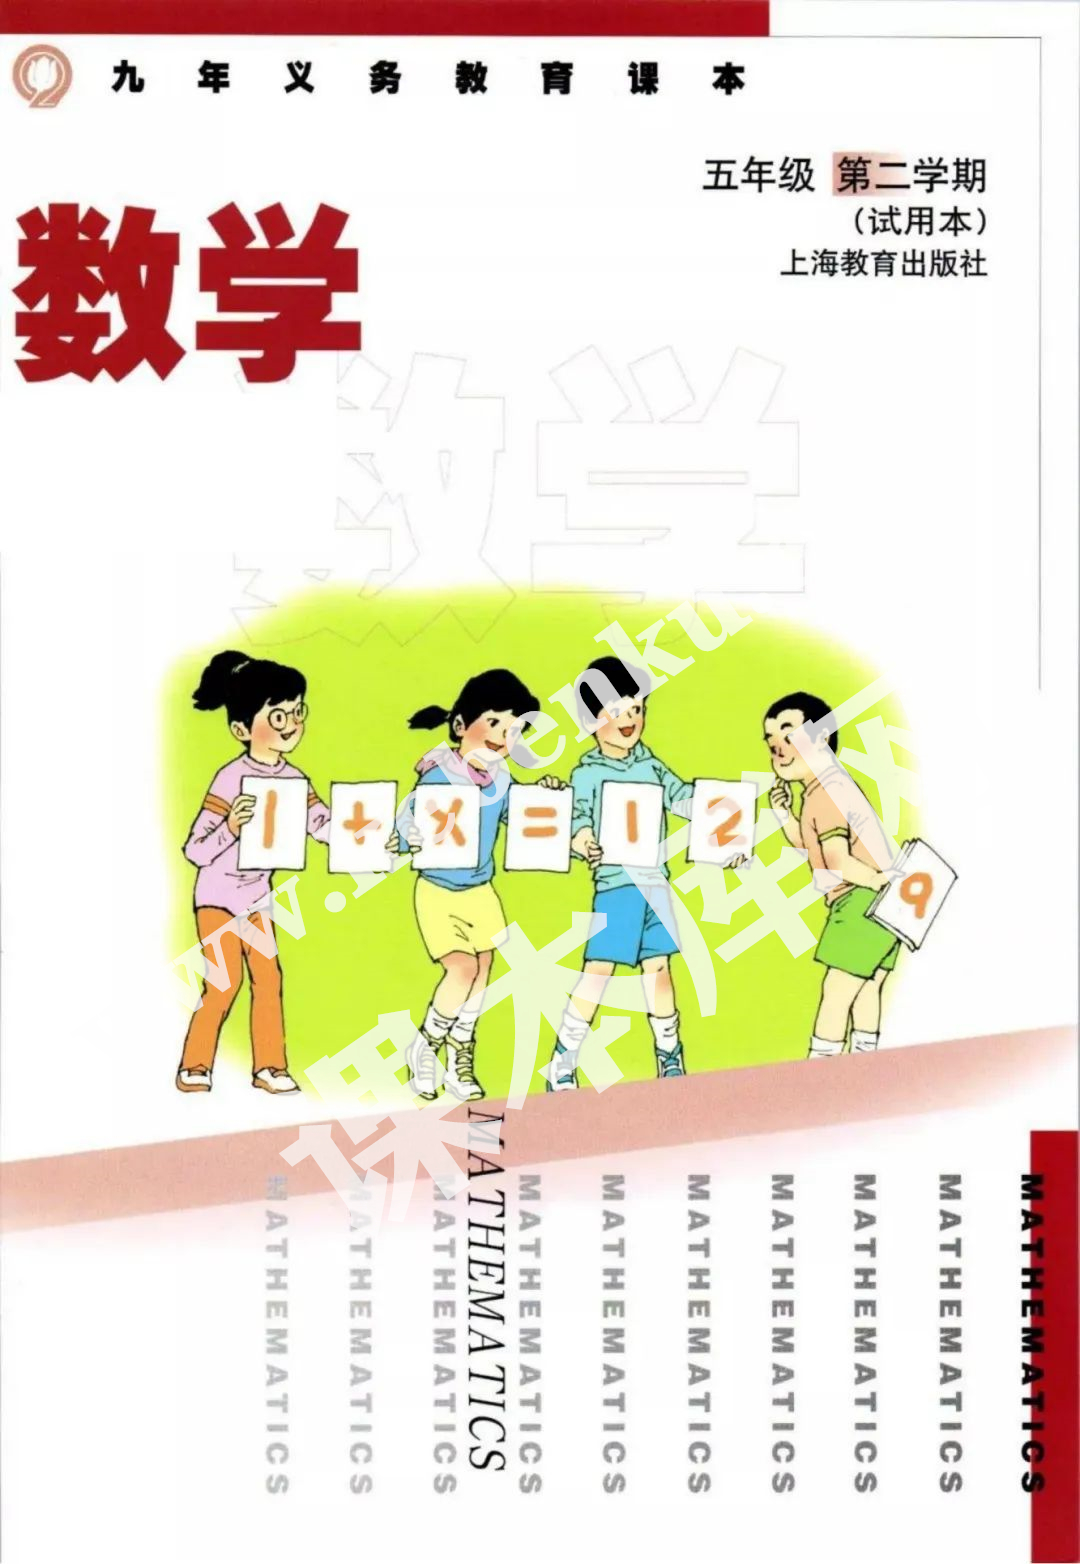 上海教育出版社九年义务教育教科书五年级数学下册电子课本